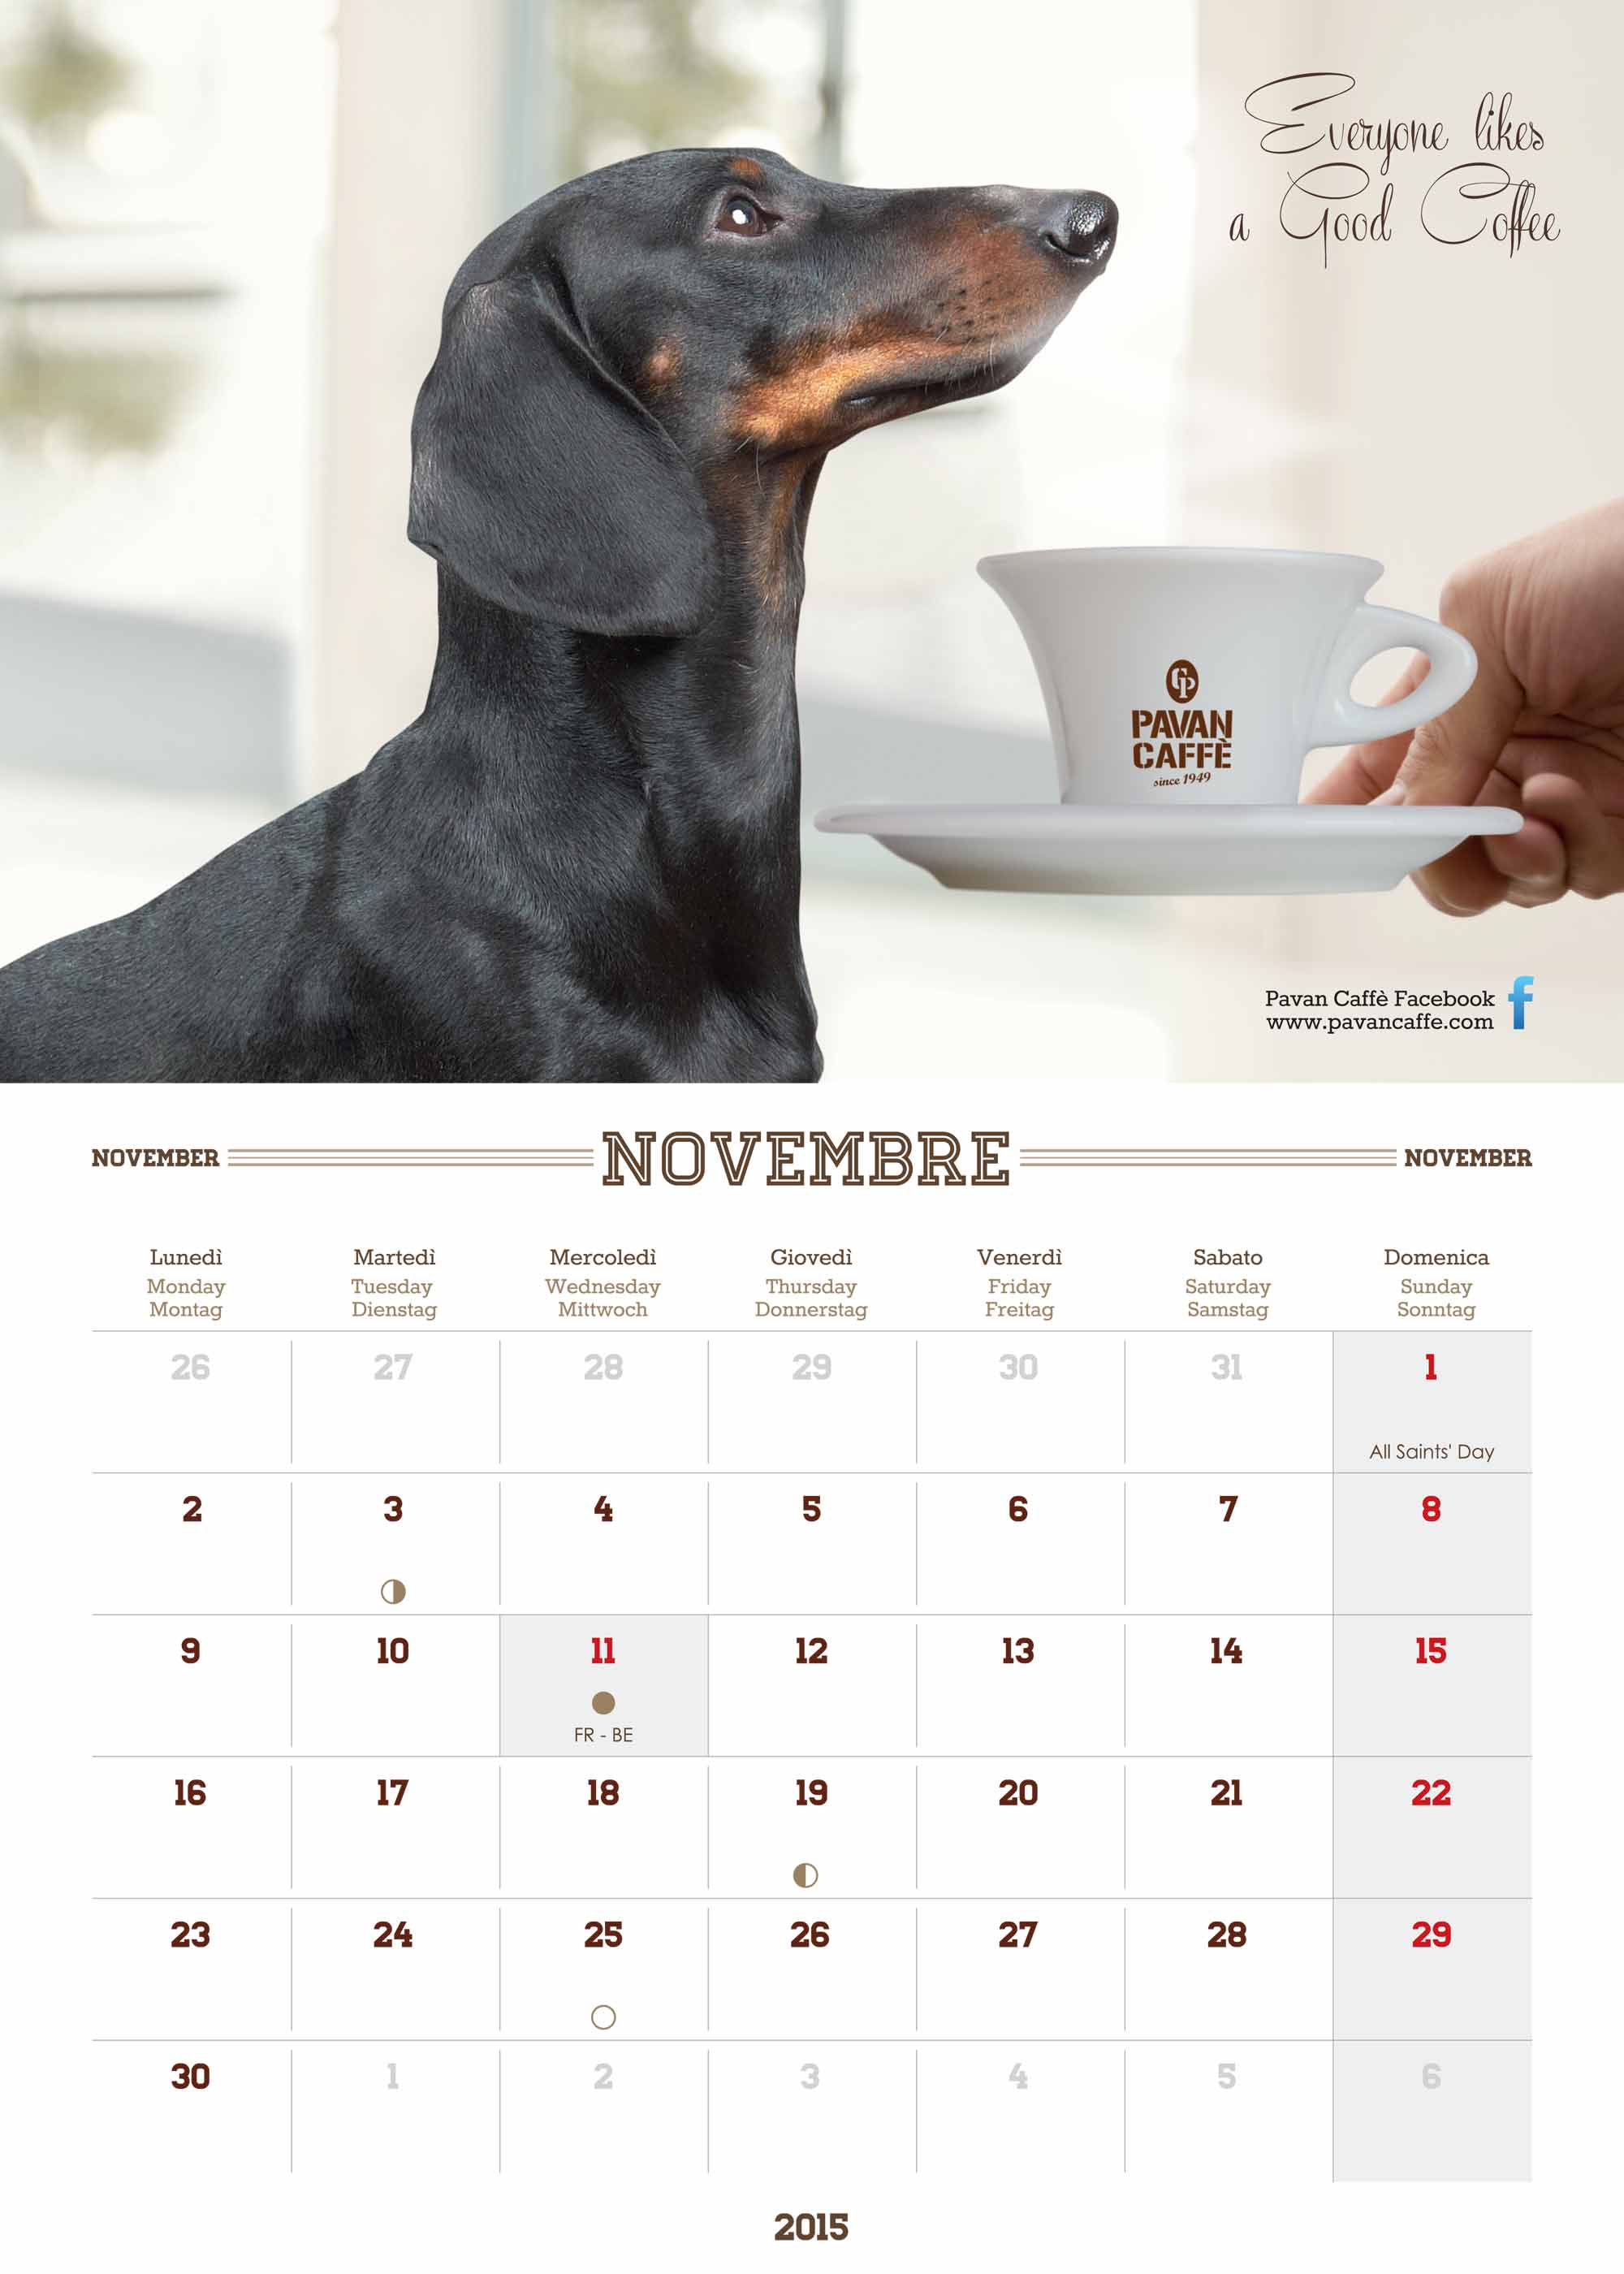 Pavan Caffè 2015 calendar November